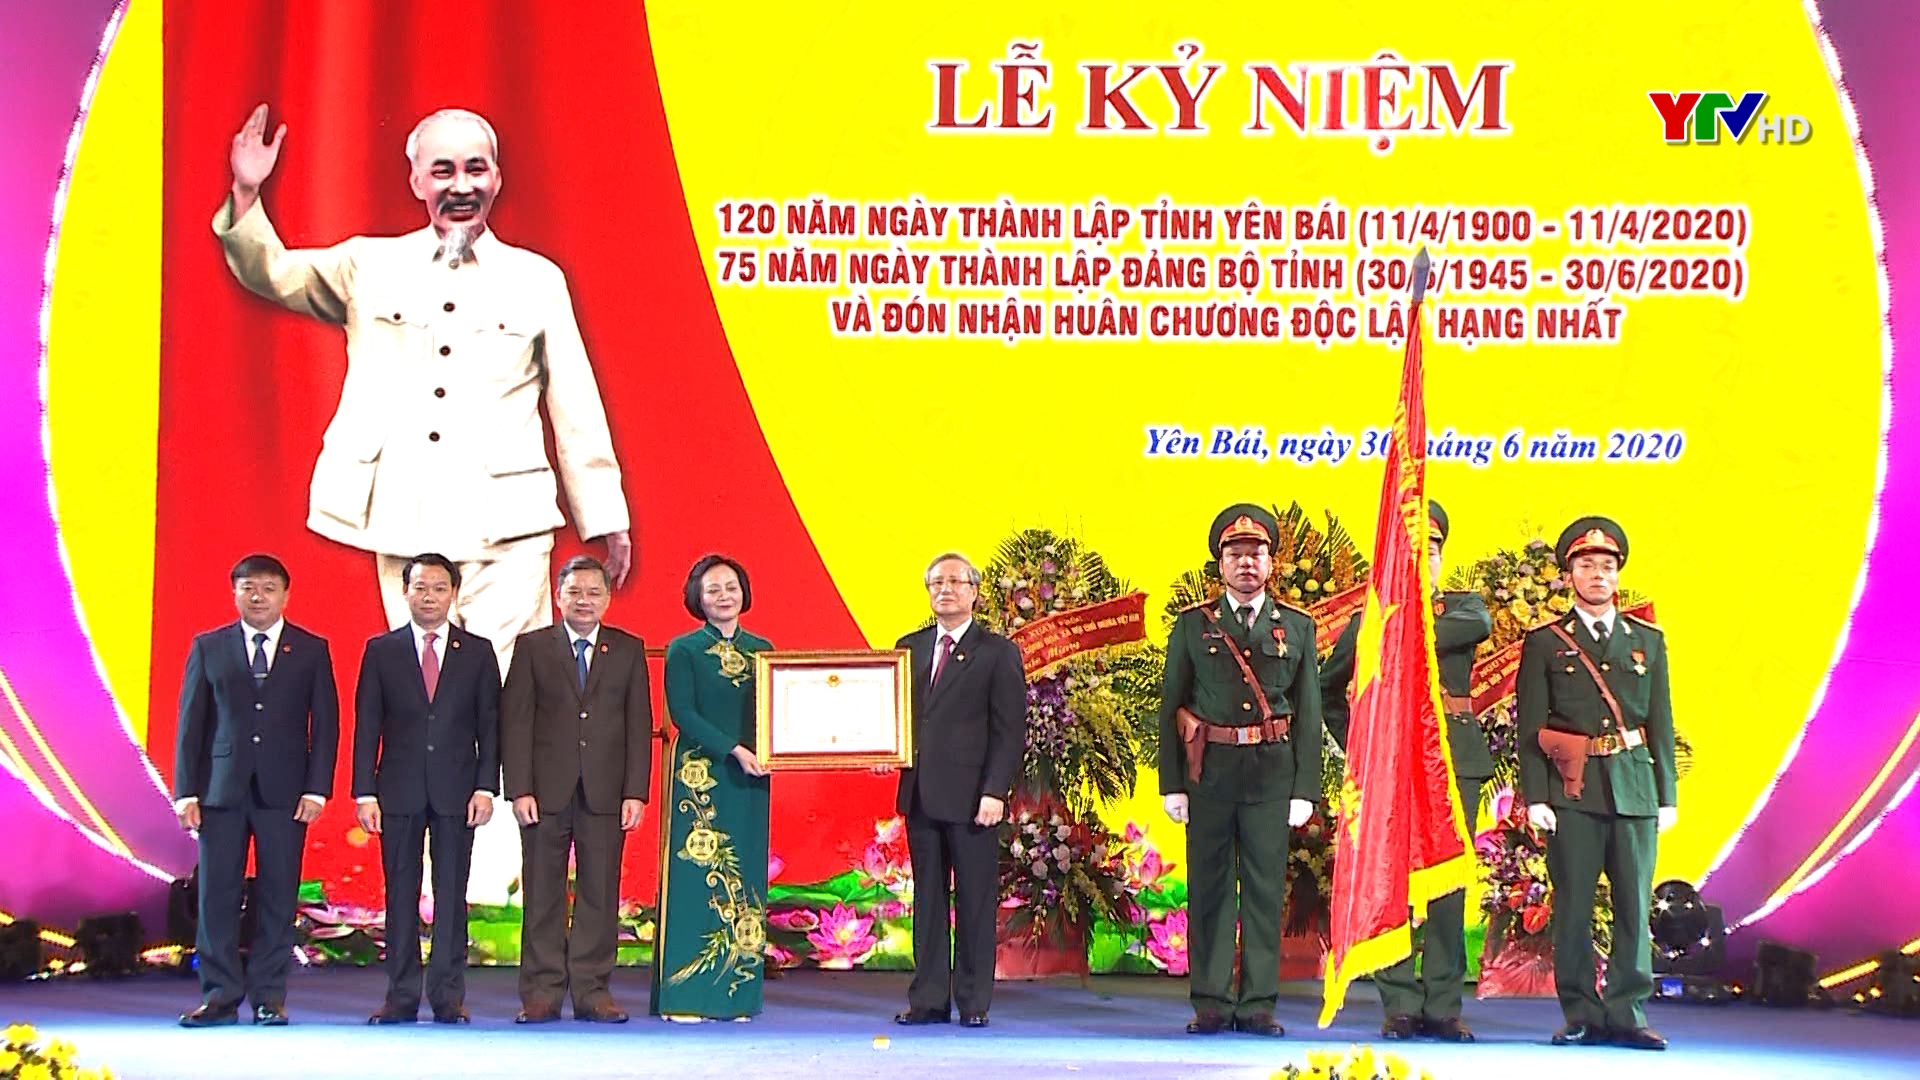 Lễ kỷ niệm 120 năm Ngày thành lập tỉnh, 75 năm Ngày thành lập Đảng bộ tỉnh Yên Bái và đón nhận Huân chương Độc lập hạng Nhất